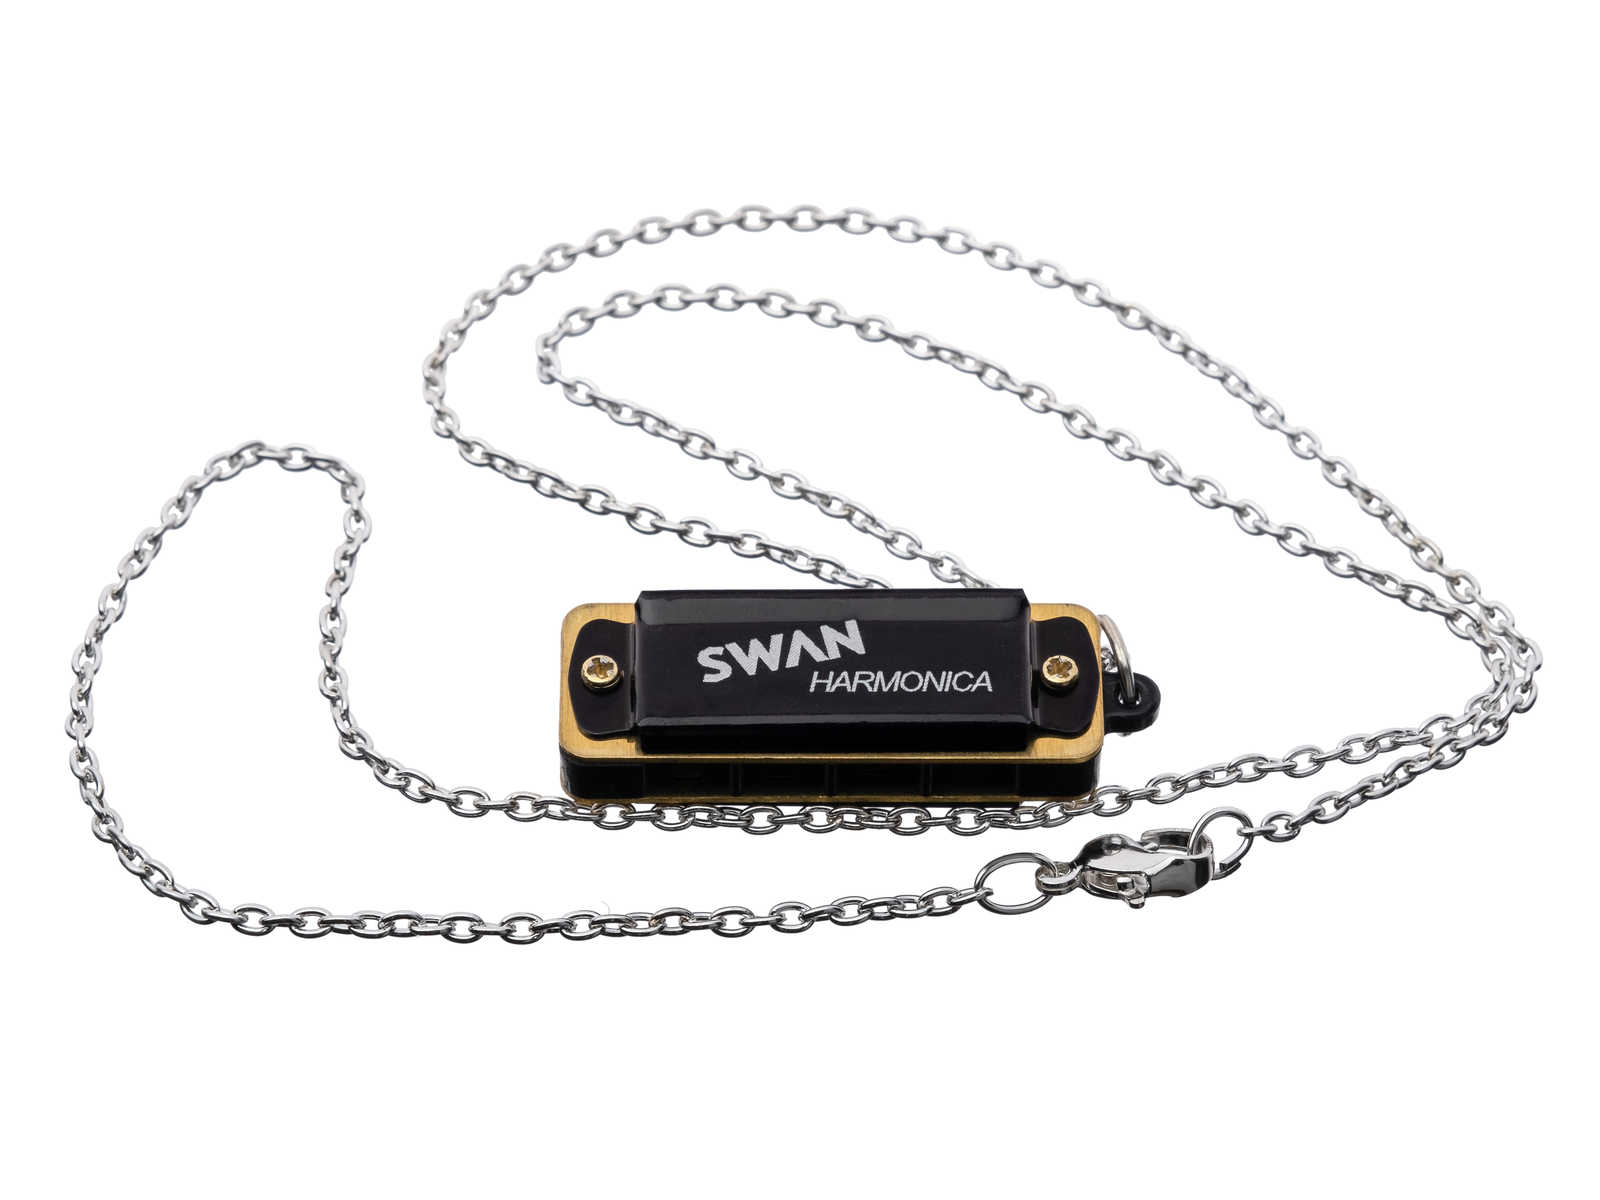 Детальная картинка товара Swan SW4 в магазине Музыкальный Мир